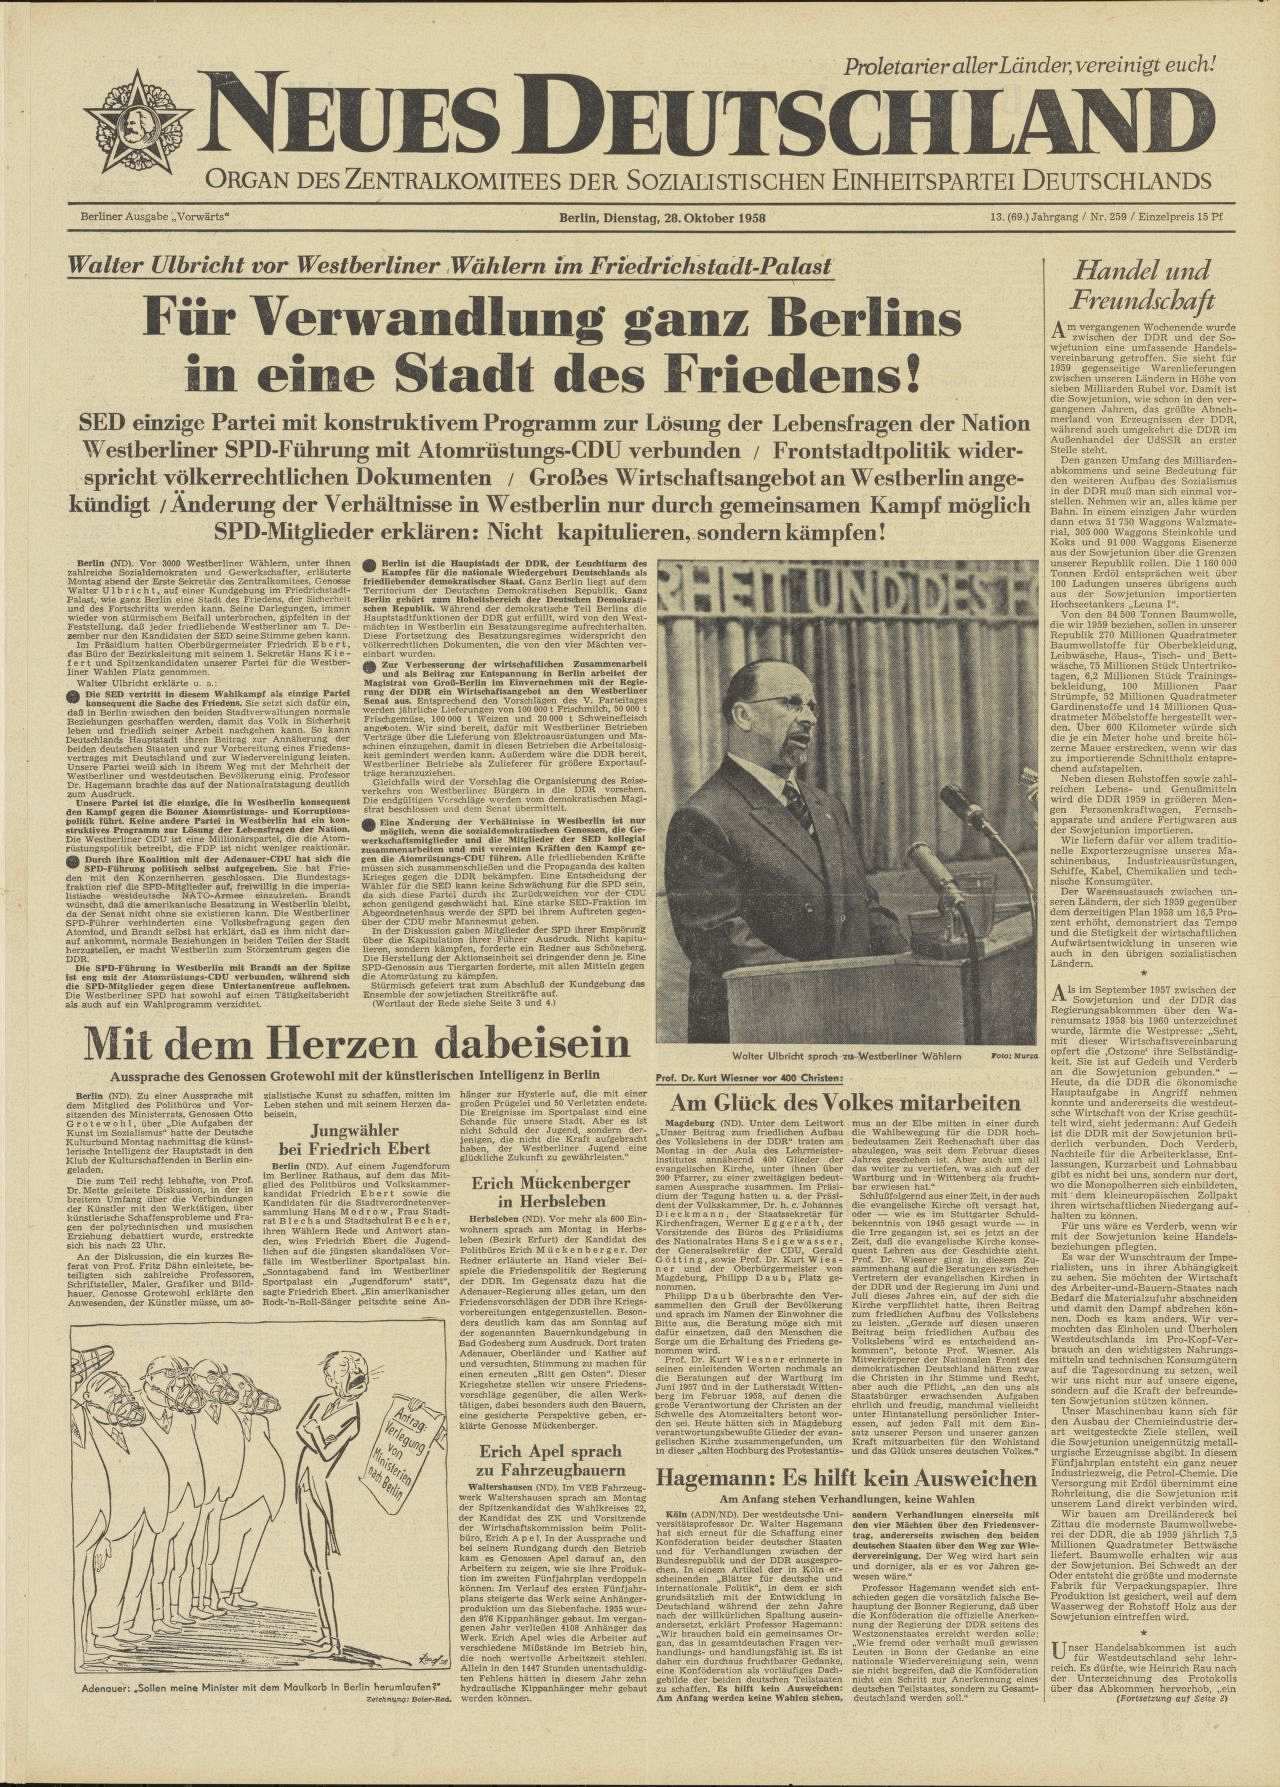 Titelseite oben Artikel: Walter Ulbricht vor Westberliner Wählern im Friedrichstadt-Palast / Für Verwandlung ganz Berlins / in eine Stadt des Friedens!, dazu auch Schwarz/weiß-Fotografie Walter Ulbrichts.
